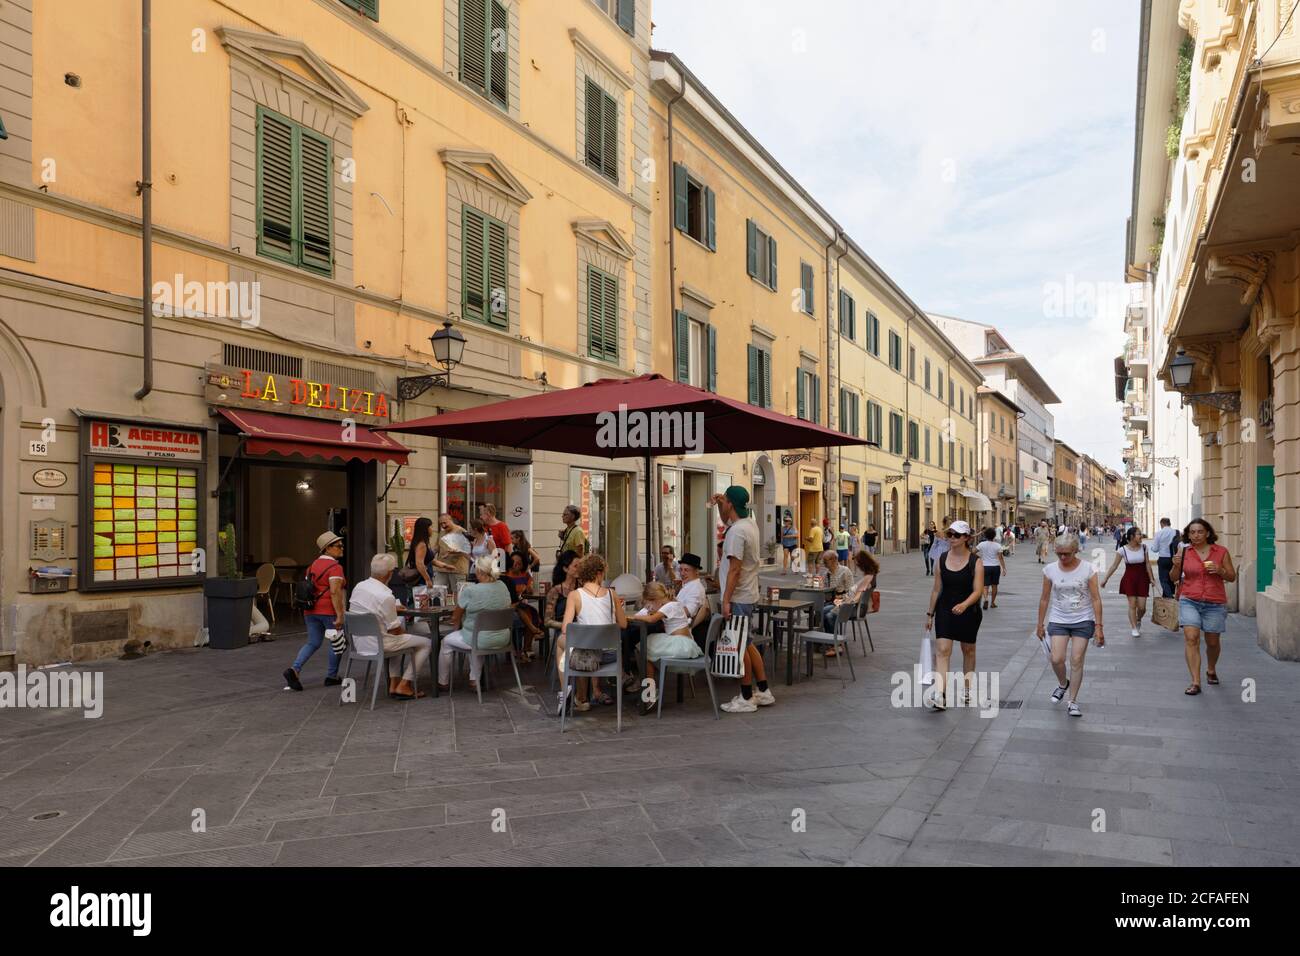 Persone che camminano e riposano in un caffè di strada su corso Italia, una strada pedonale nel centro di Pisa, Italia Foto Stock